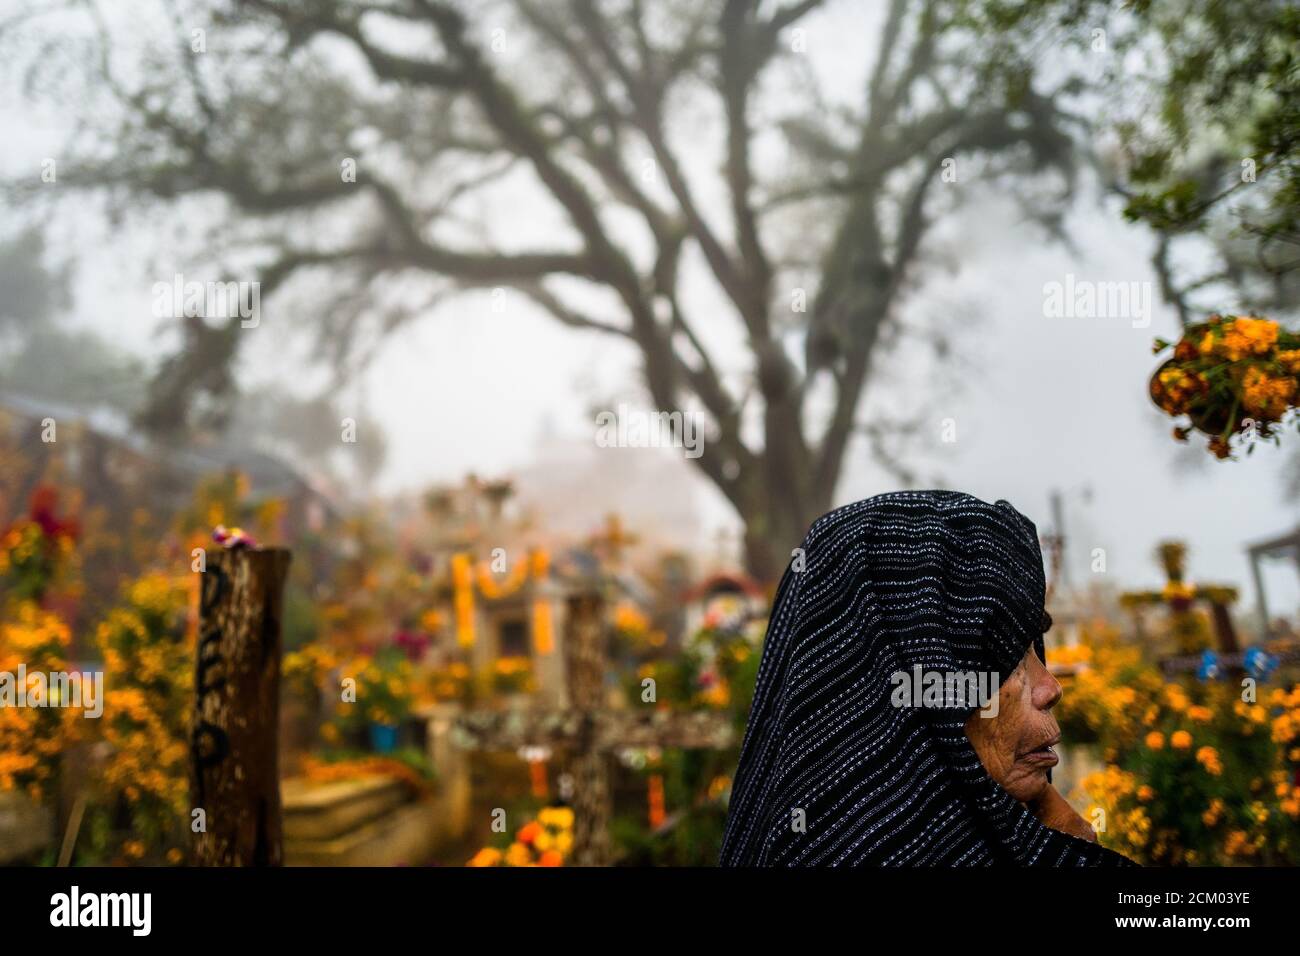 Una donna indigena messicana cammina tra le tombe decorate con fiori in un cimitero durante le celebrazioni del giorno dei morti ad Ayutla, Messico. Foto Stock